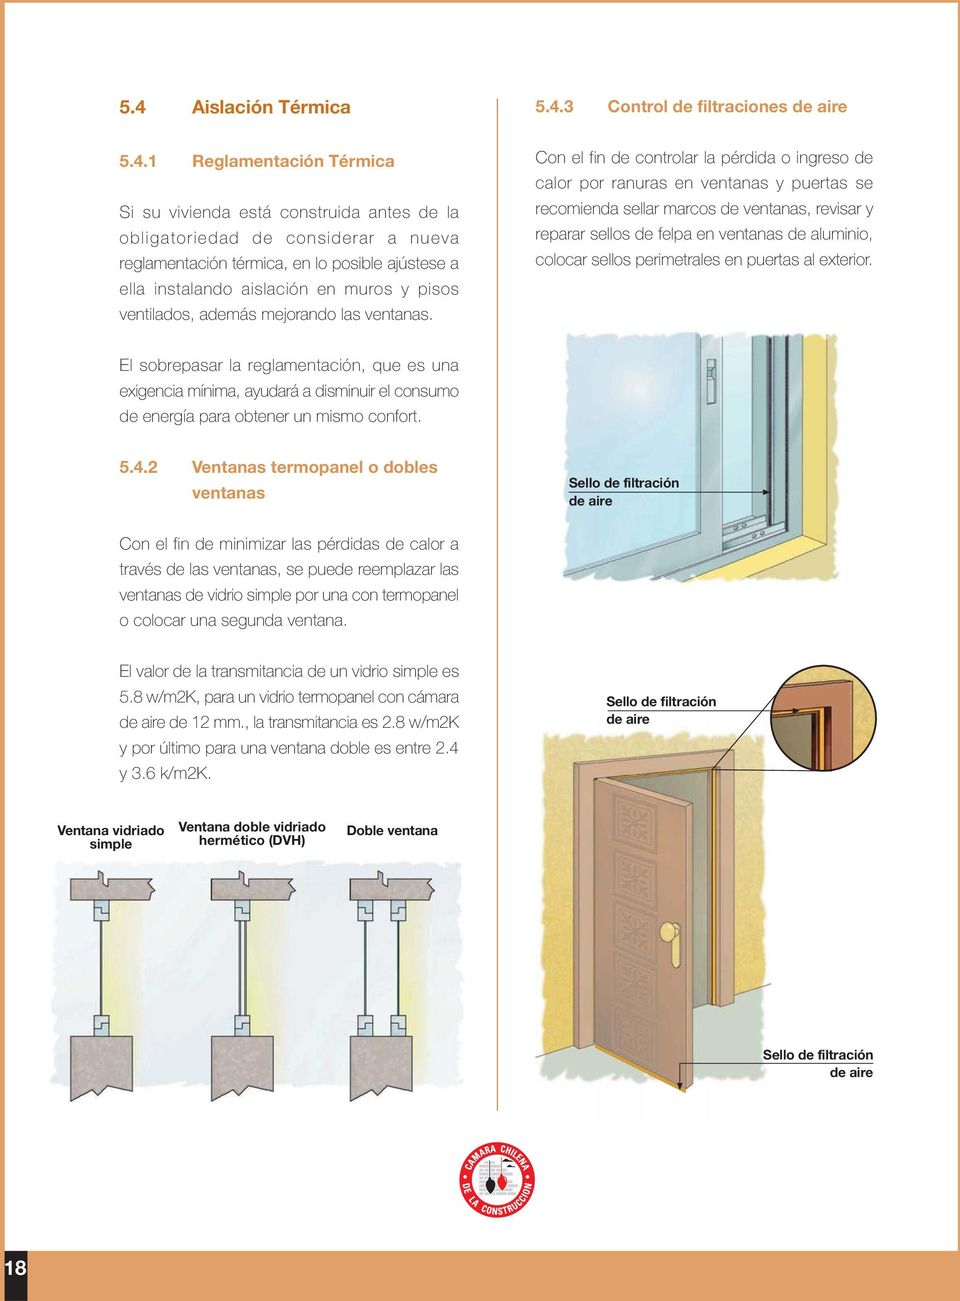 Con el fin de controlar la pérdida o ingreso de calor por ranuras en ventanas y puertas se recomienda sellar marcos de ventanas, revisar y reparar sellos de felpa en ventanas de aluminio, colocar